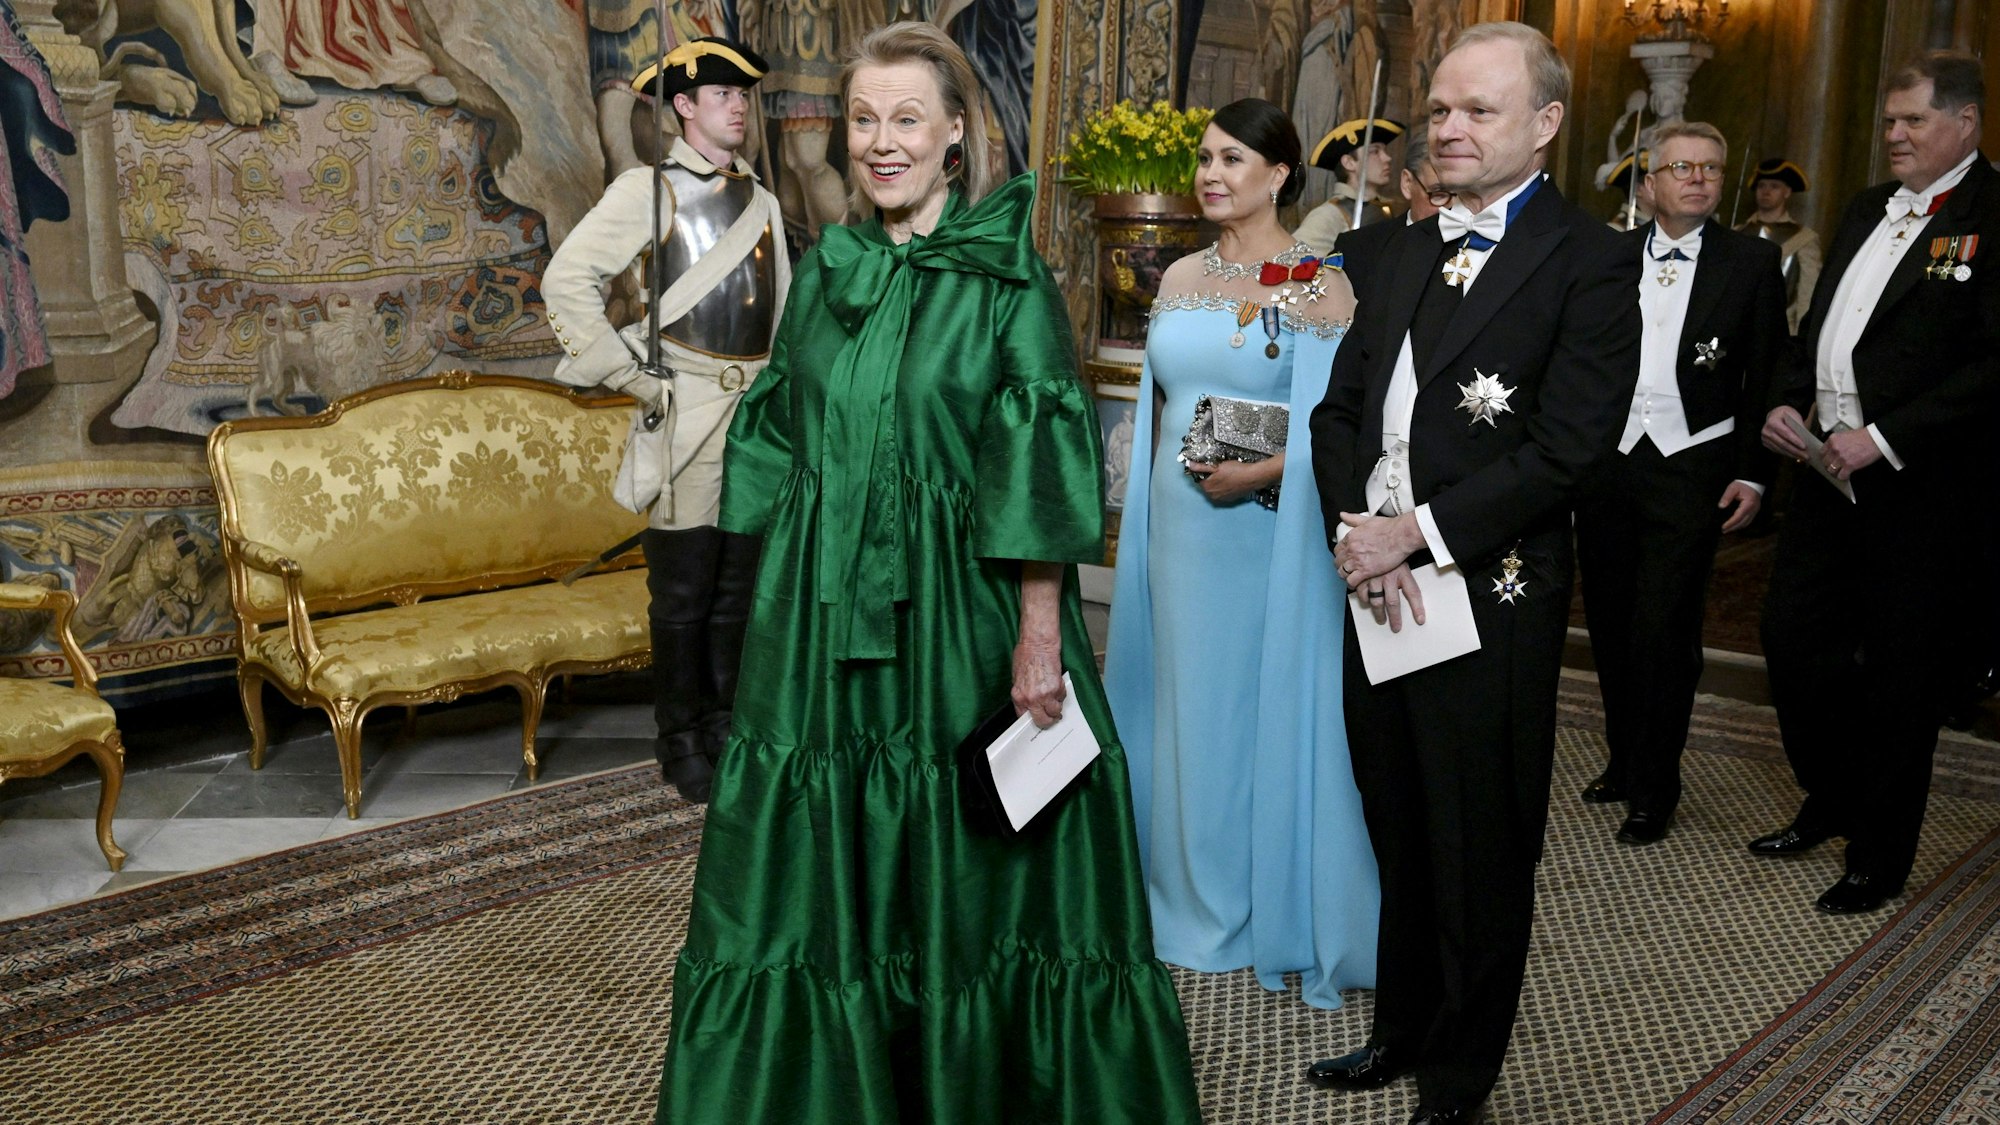 Die finnische Sängerin Arja Saijonmaa (l) posiert für ein Bild vor einem Staatsdinner im Königlichen Palast in Stockholm.